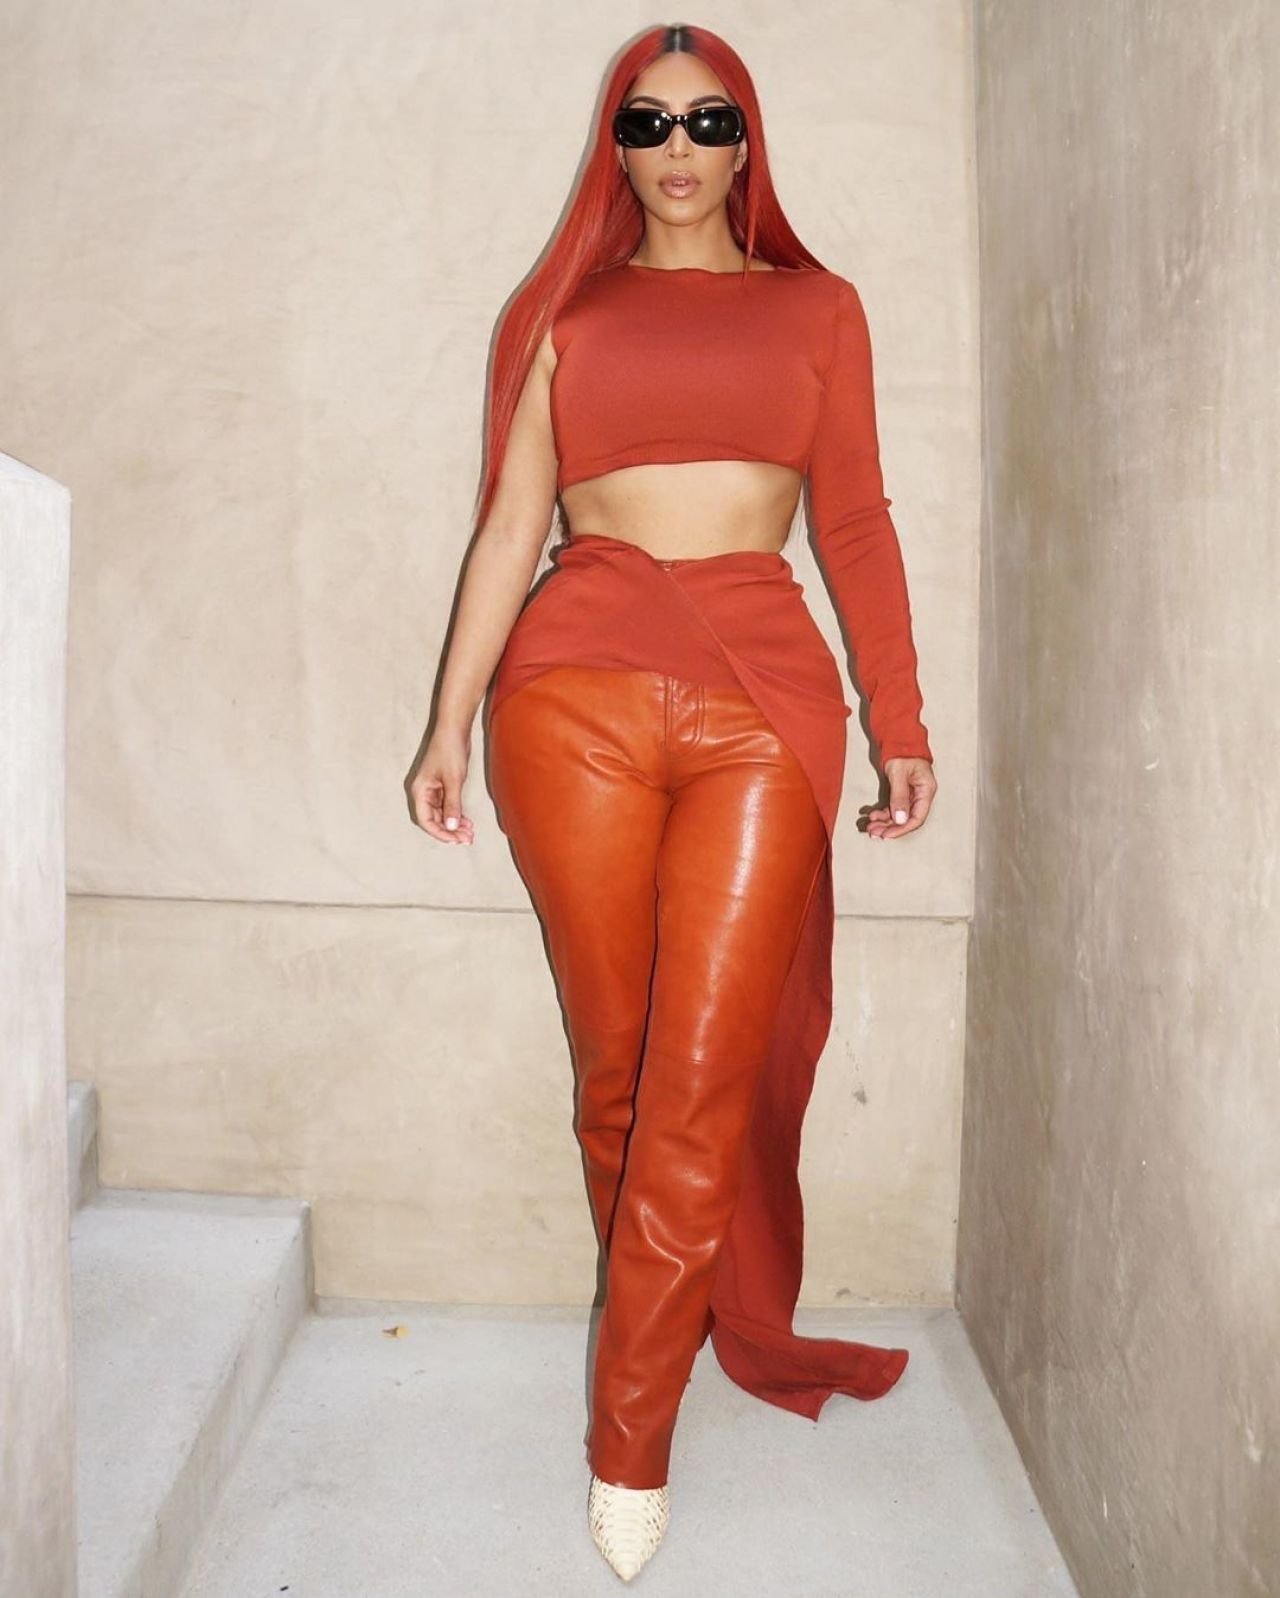 kim-kardashian-outfit-07-05-2020-1.jpg